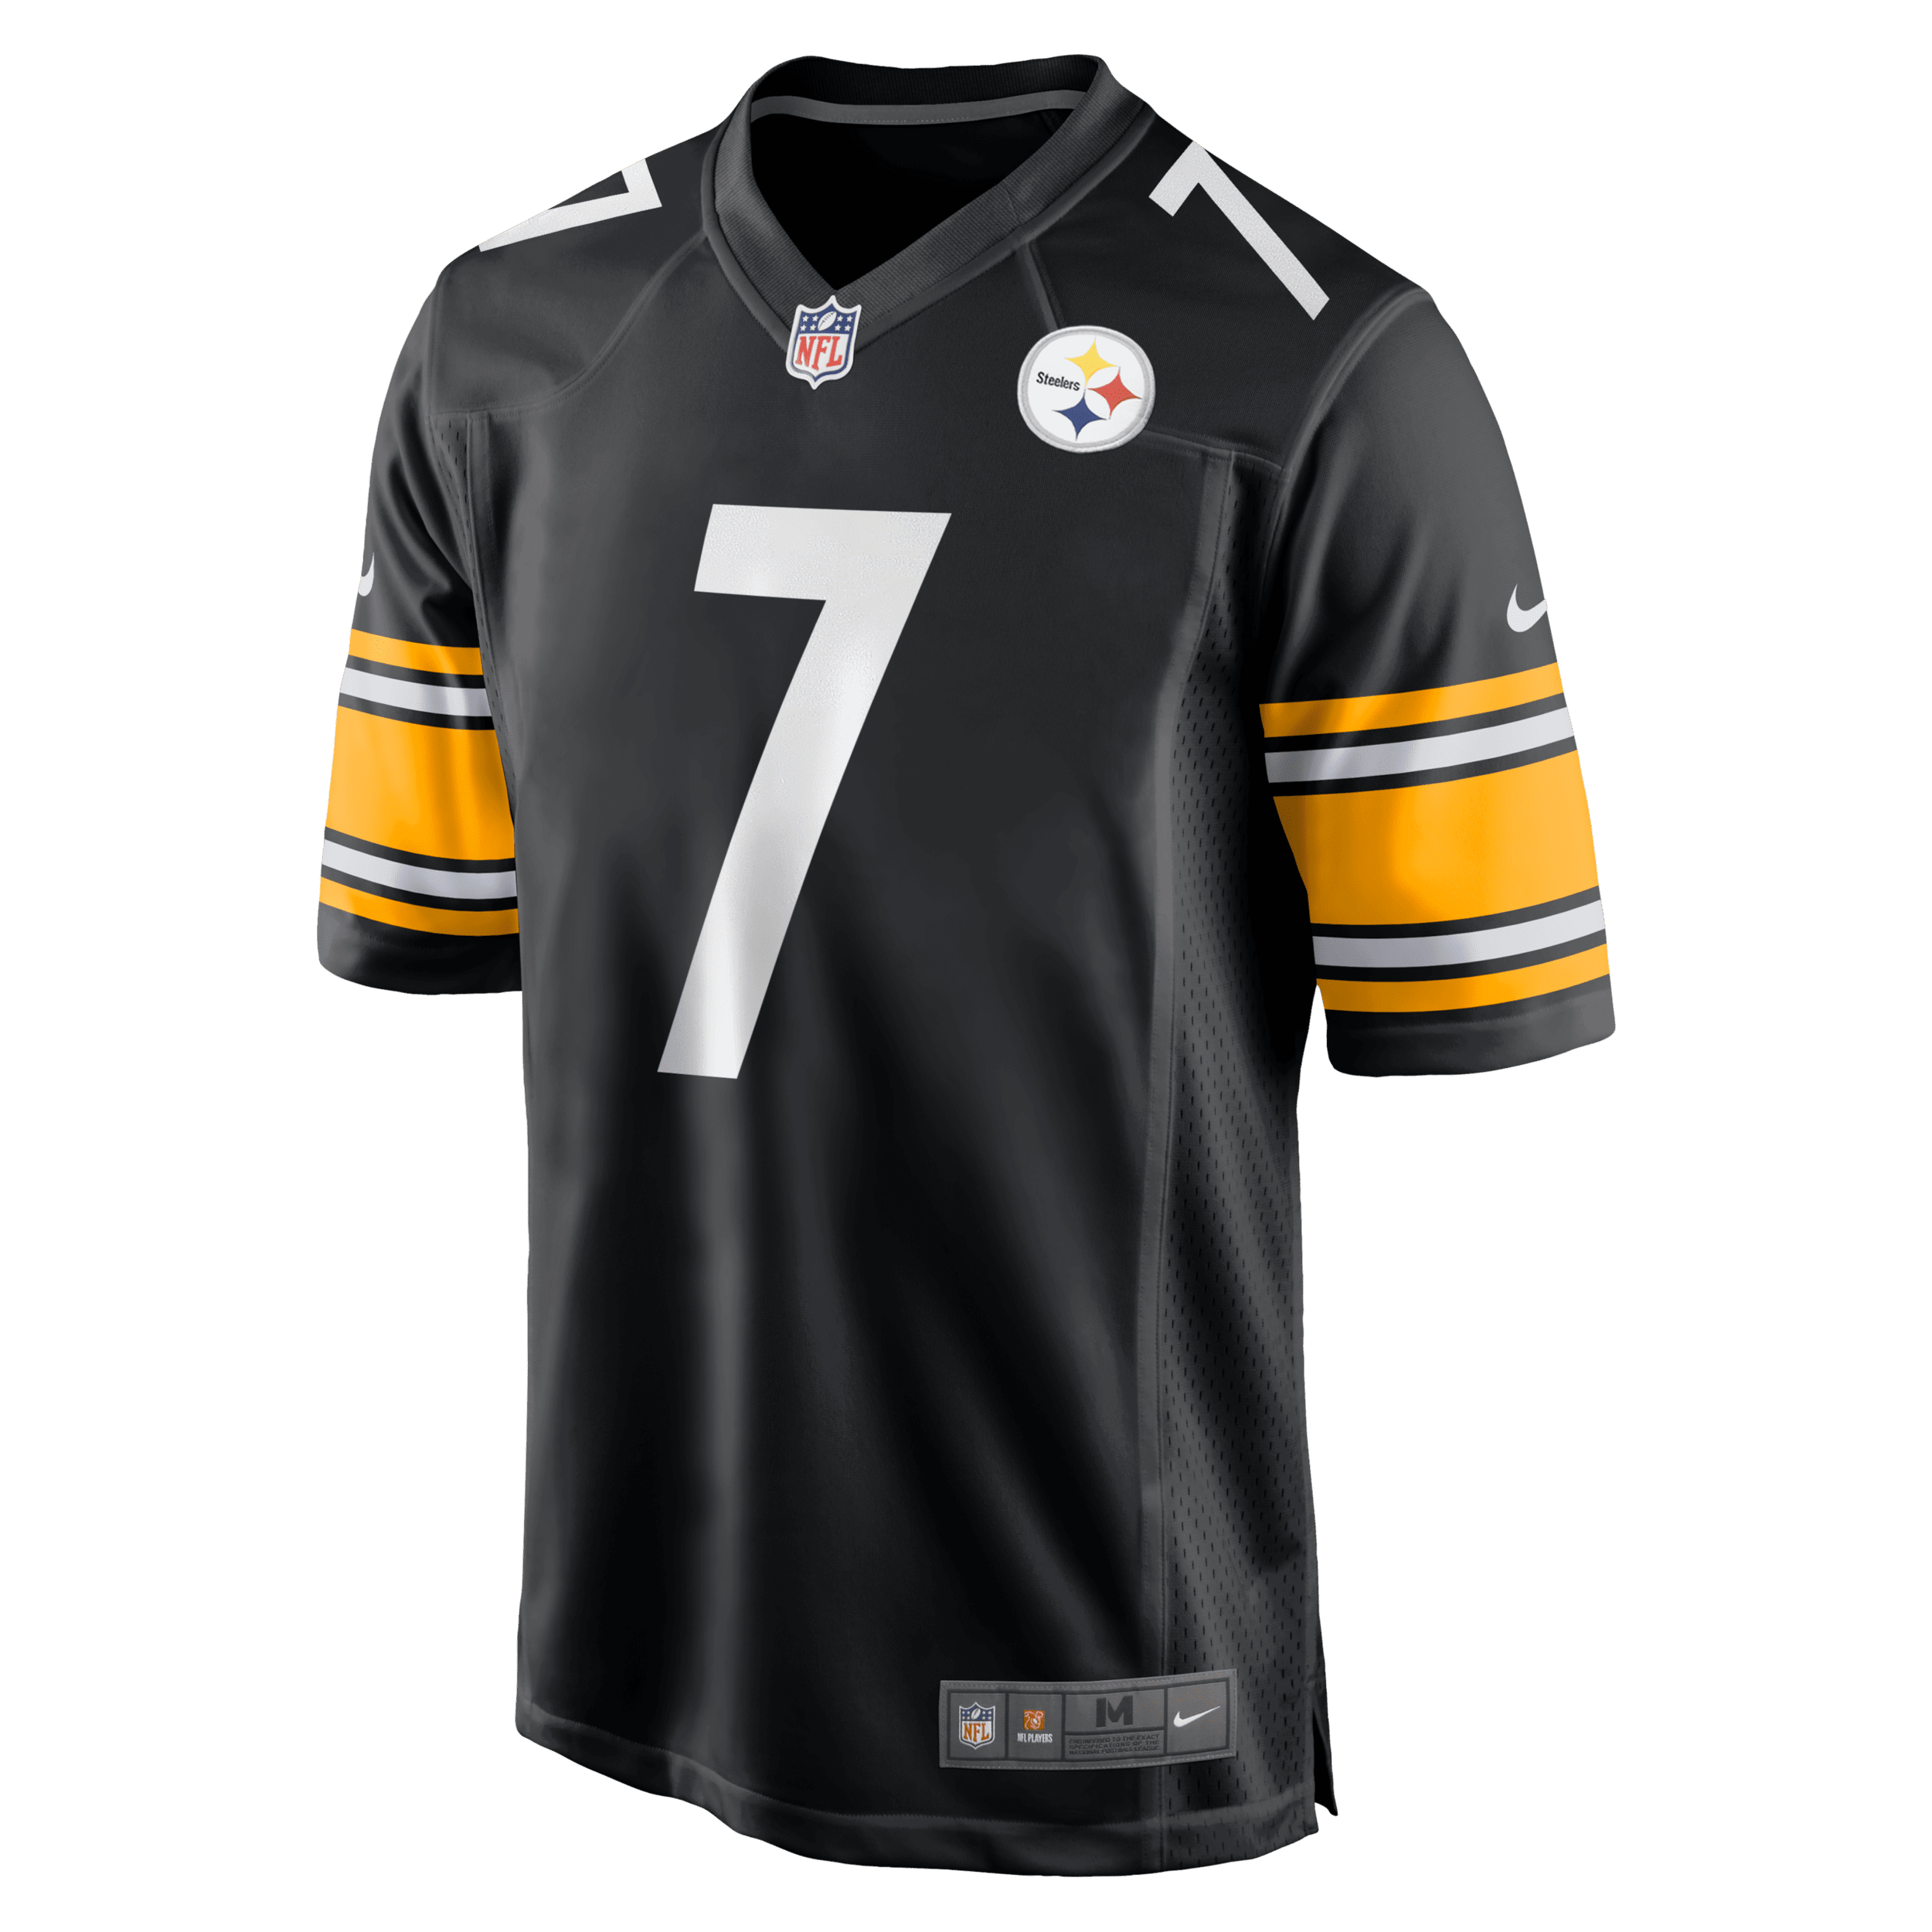 Ανδρική φανέλα αμερικανικού ποδοσφαίρου NFL Pittsburgh Steelers (Ben Roethlisberger) - Μαύρο